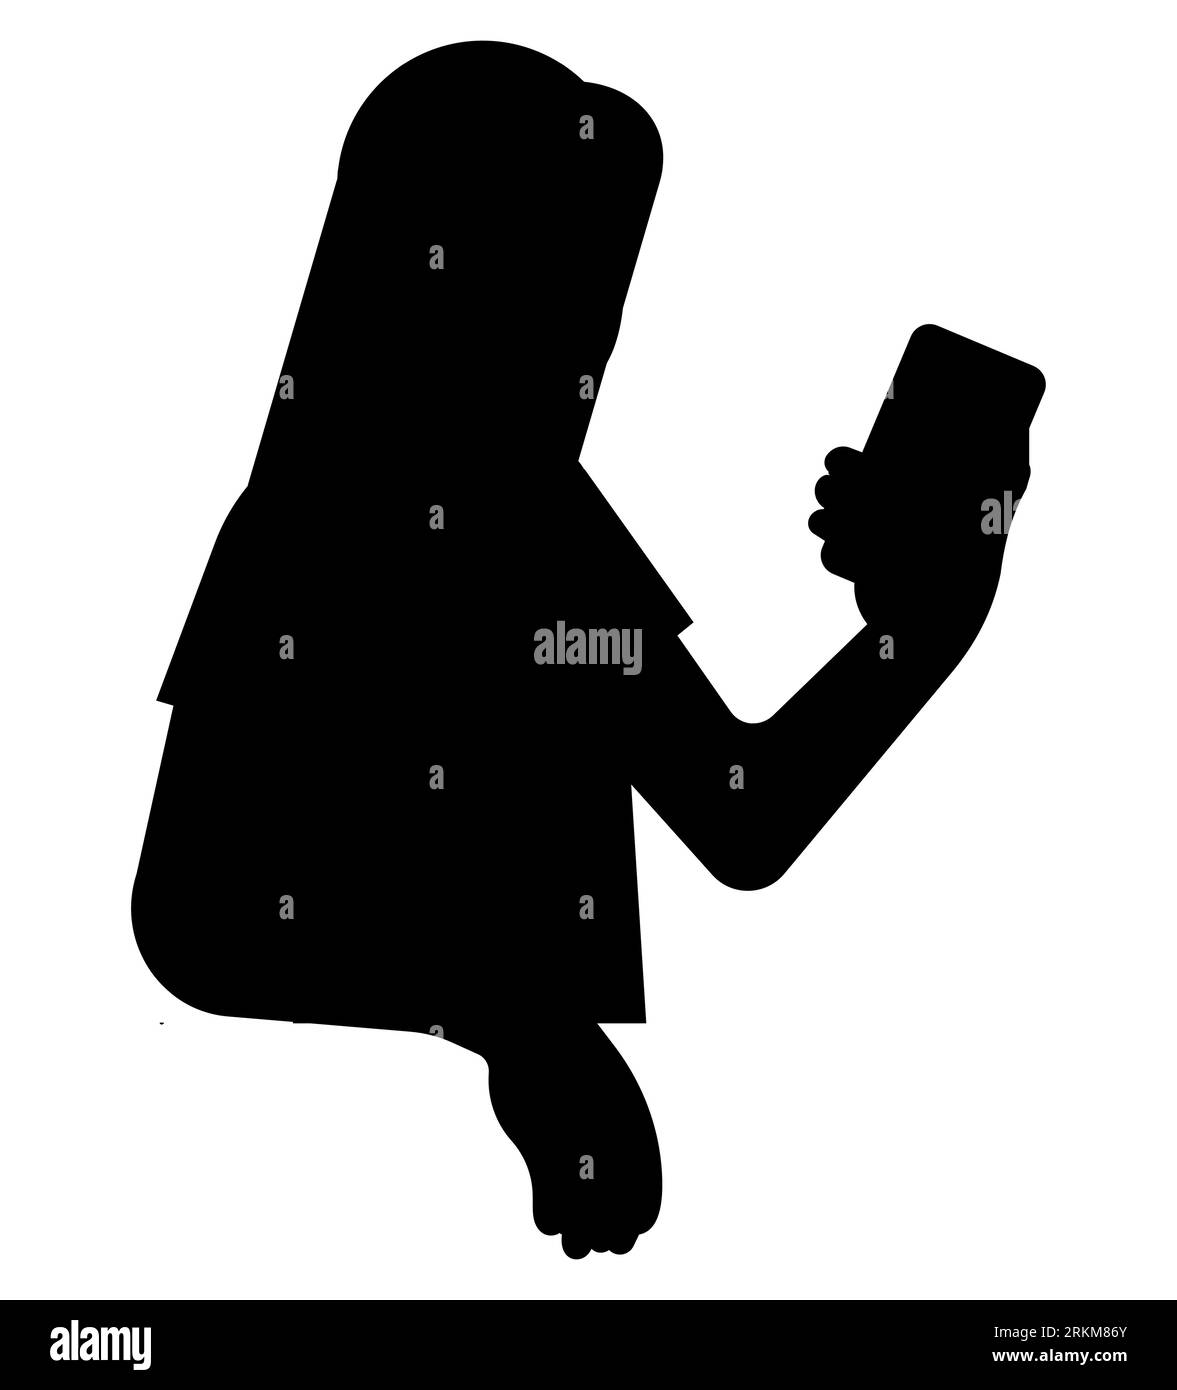 Schwarze Silhouette einer jungen Frau, die ein Smartphone anschaut und chattet, ein Mädchen, das auf einem Telefon schreibt. Weibliche Figur, Vektorillustration isoliert Stock Vektor